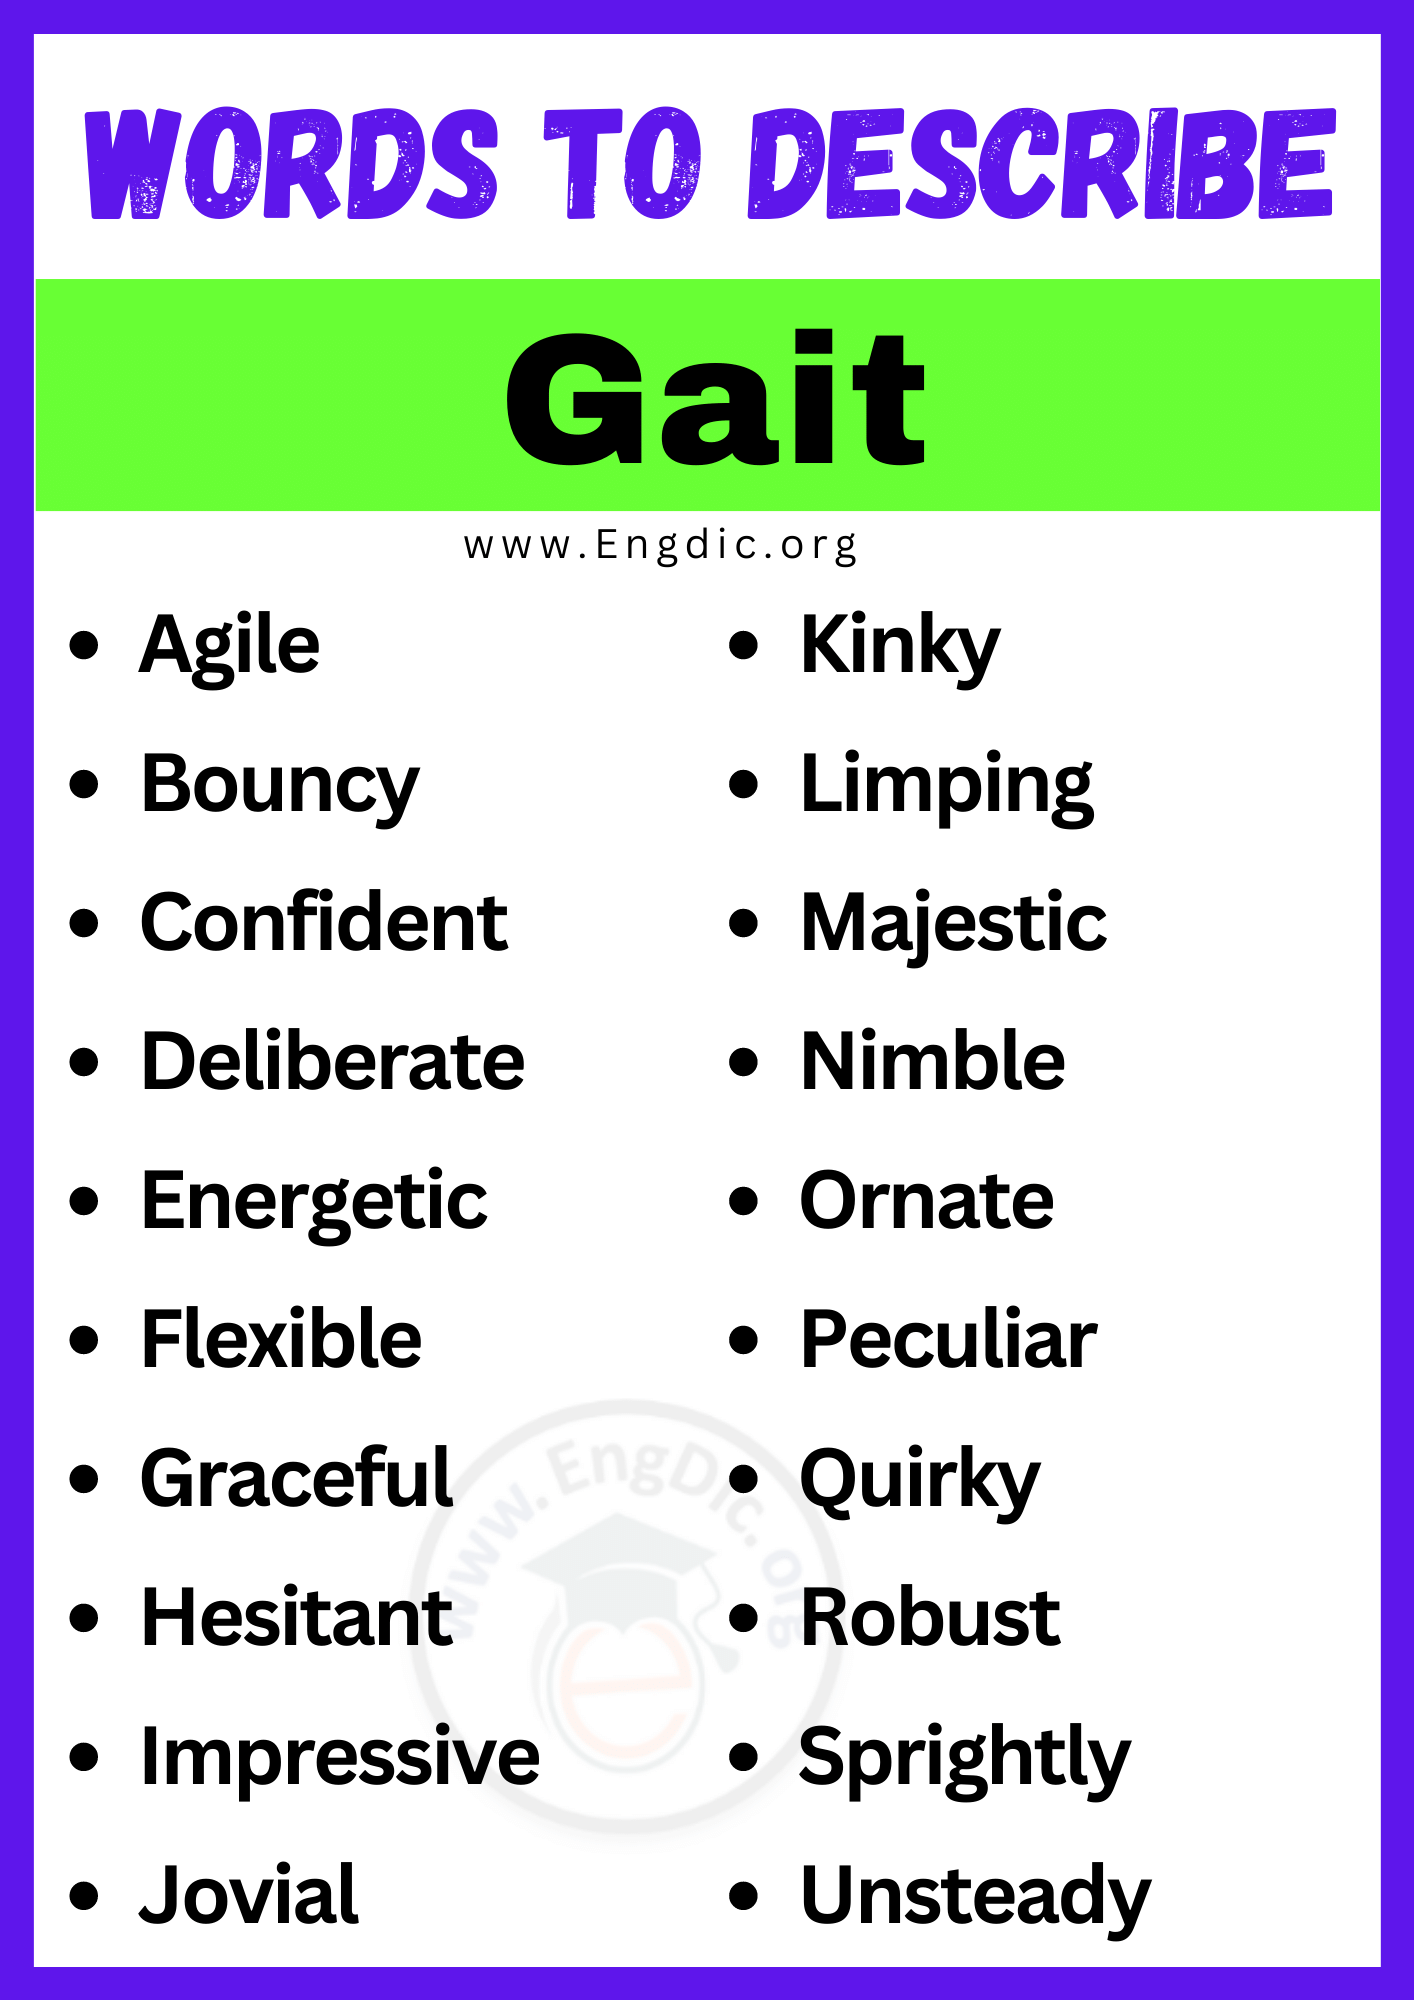 Words to Describe Gait